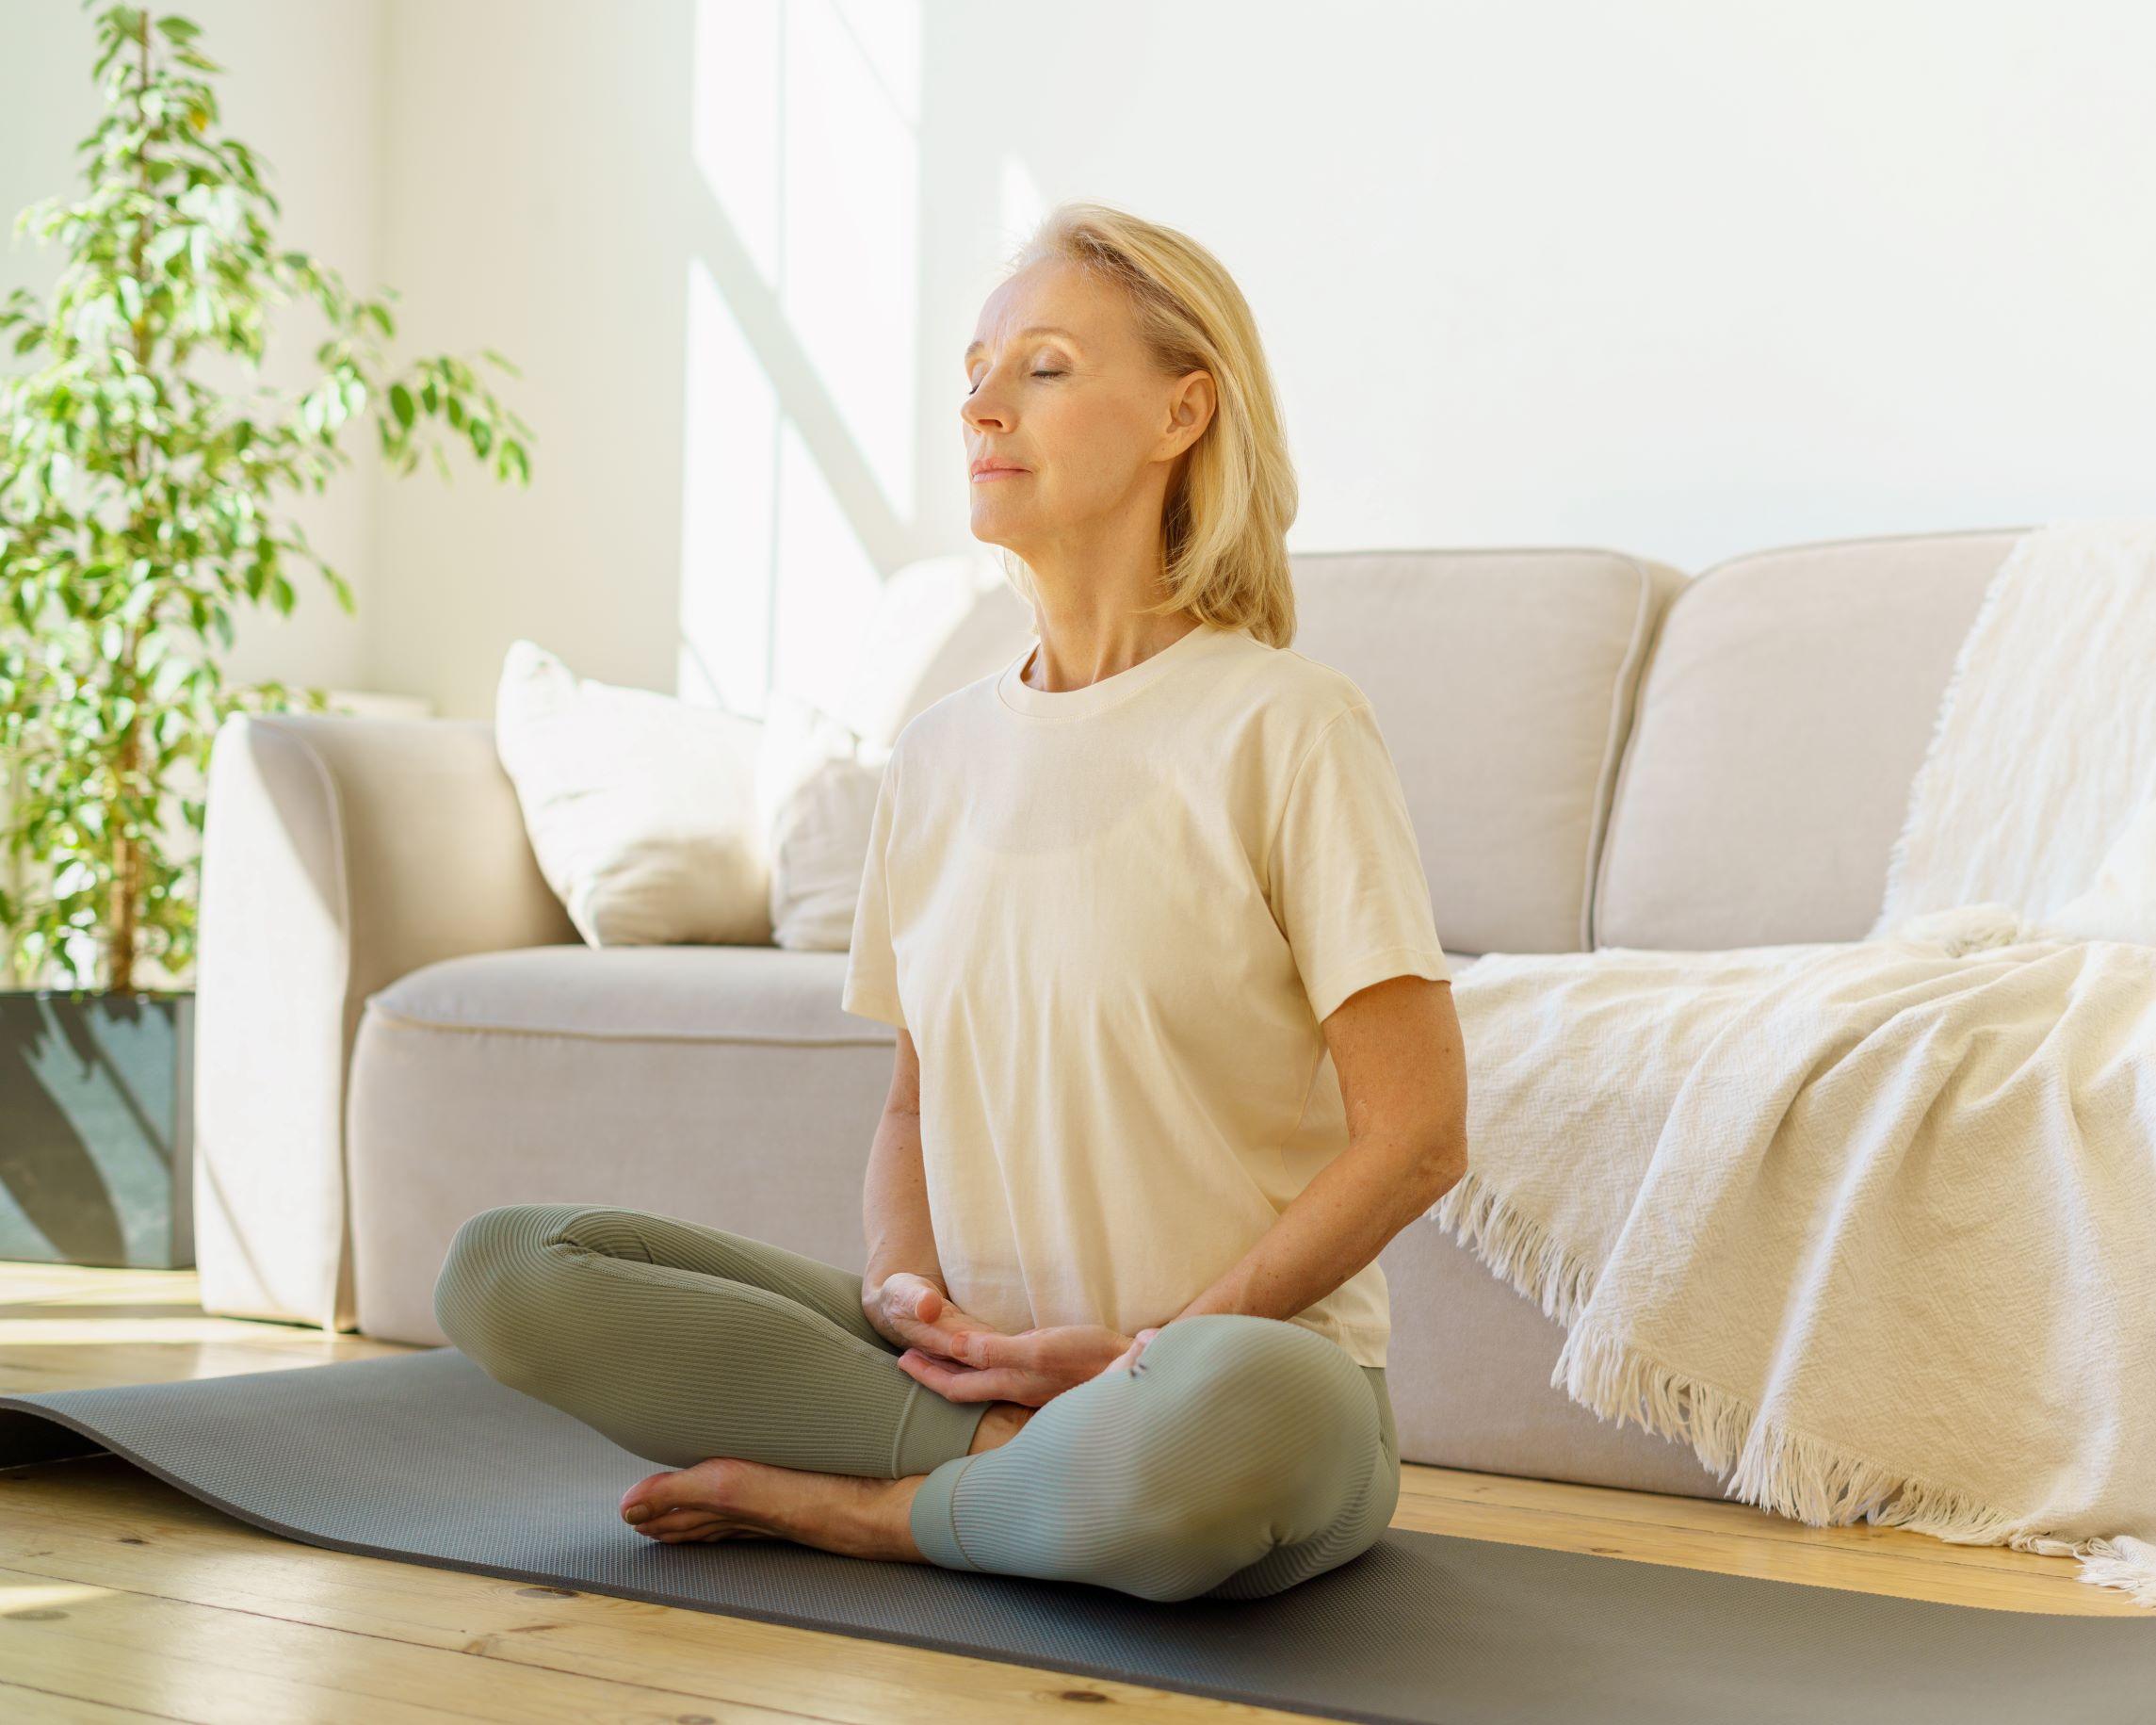 Durante il laboratorio imparerai a respirare in modo consapevole, a gestire meglio le tue emozioni, ridurrai il battito cardiaco, il cortisolo (ormone dello stress) e recupererai la calma interiore e la lucidità mentale. Imparerai tecniche attraverso le quali saprai gestire lo stress praticando la respirazione diaframmatica per liberarti dalla negatività. La pratica terminerà con un momento di rilassamento (yoga nidra e respirazione della calma) Il percorso si terrà in un ambiente di condivisioni, confidenziale e positivo. DETTAGLI: Il laboratorio si svolge presso la SuisseUp Academy, in Via Lugano 13 6982 Agno. Parcheggi disponibili e gratuiti in loco. *Il laboratorio viene confermato al raggiungimento del numero minimo di partecipanti.